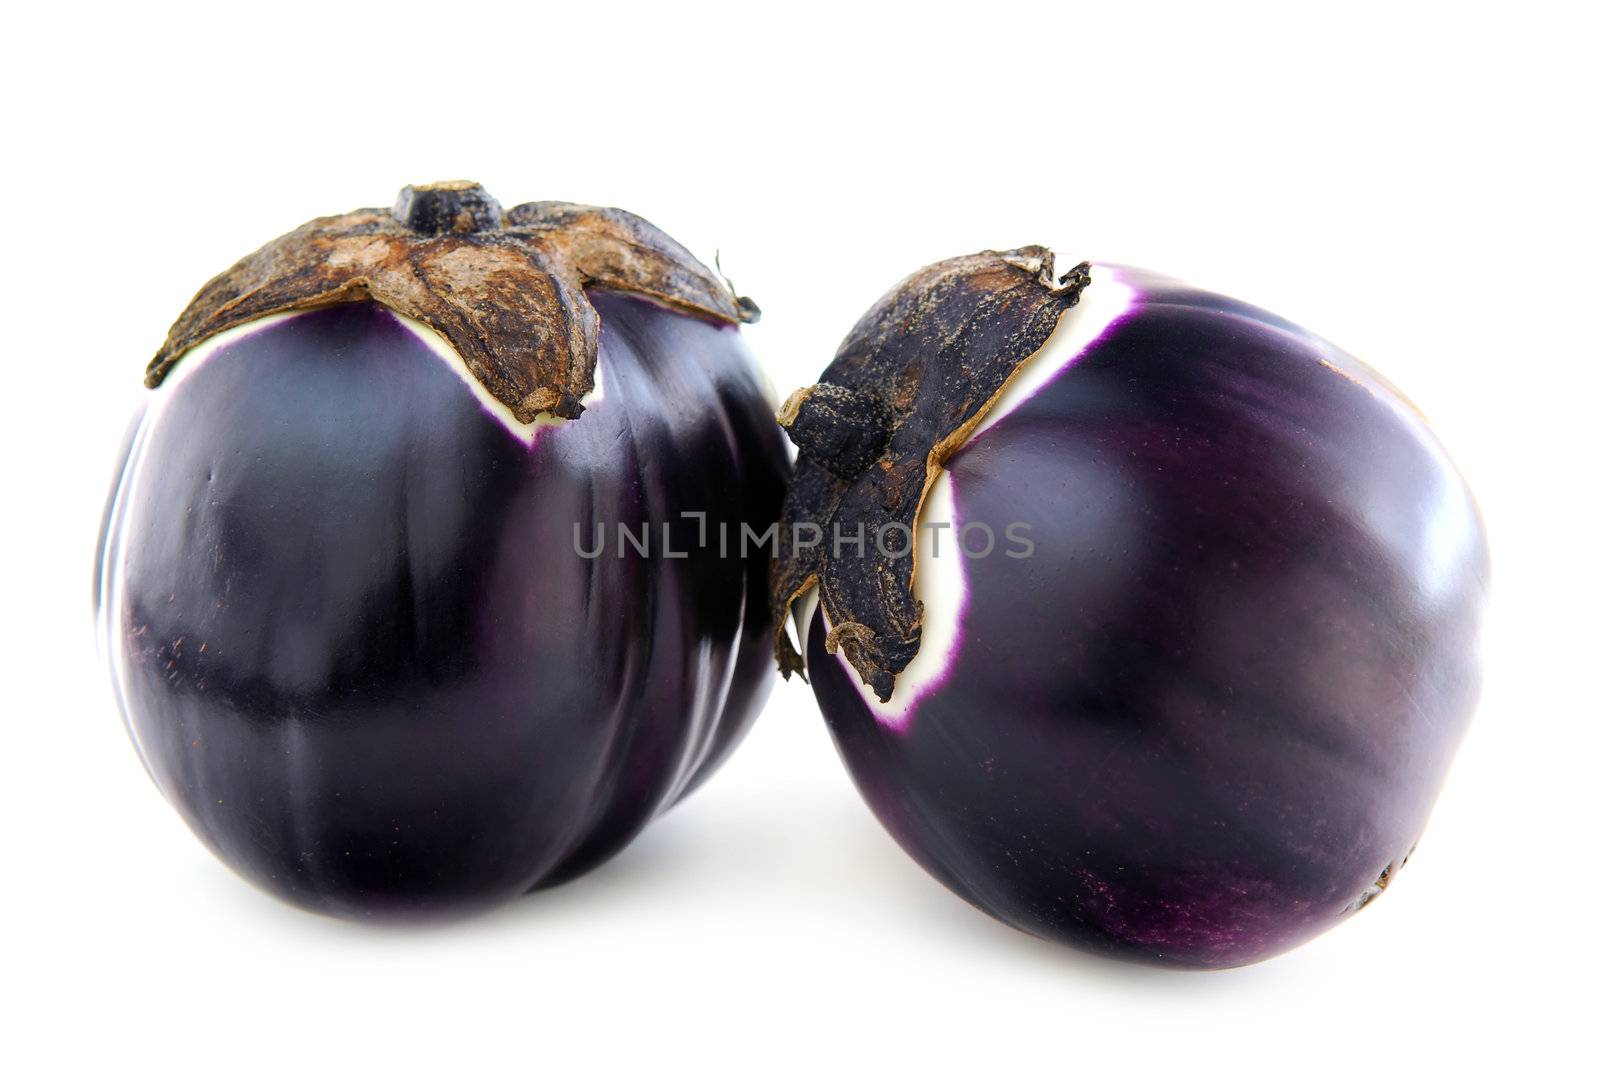 Two round eggplants (prosperosa) isolated on white background